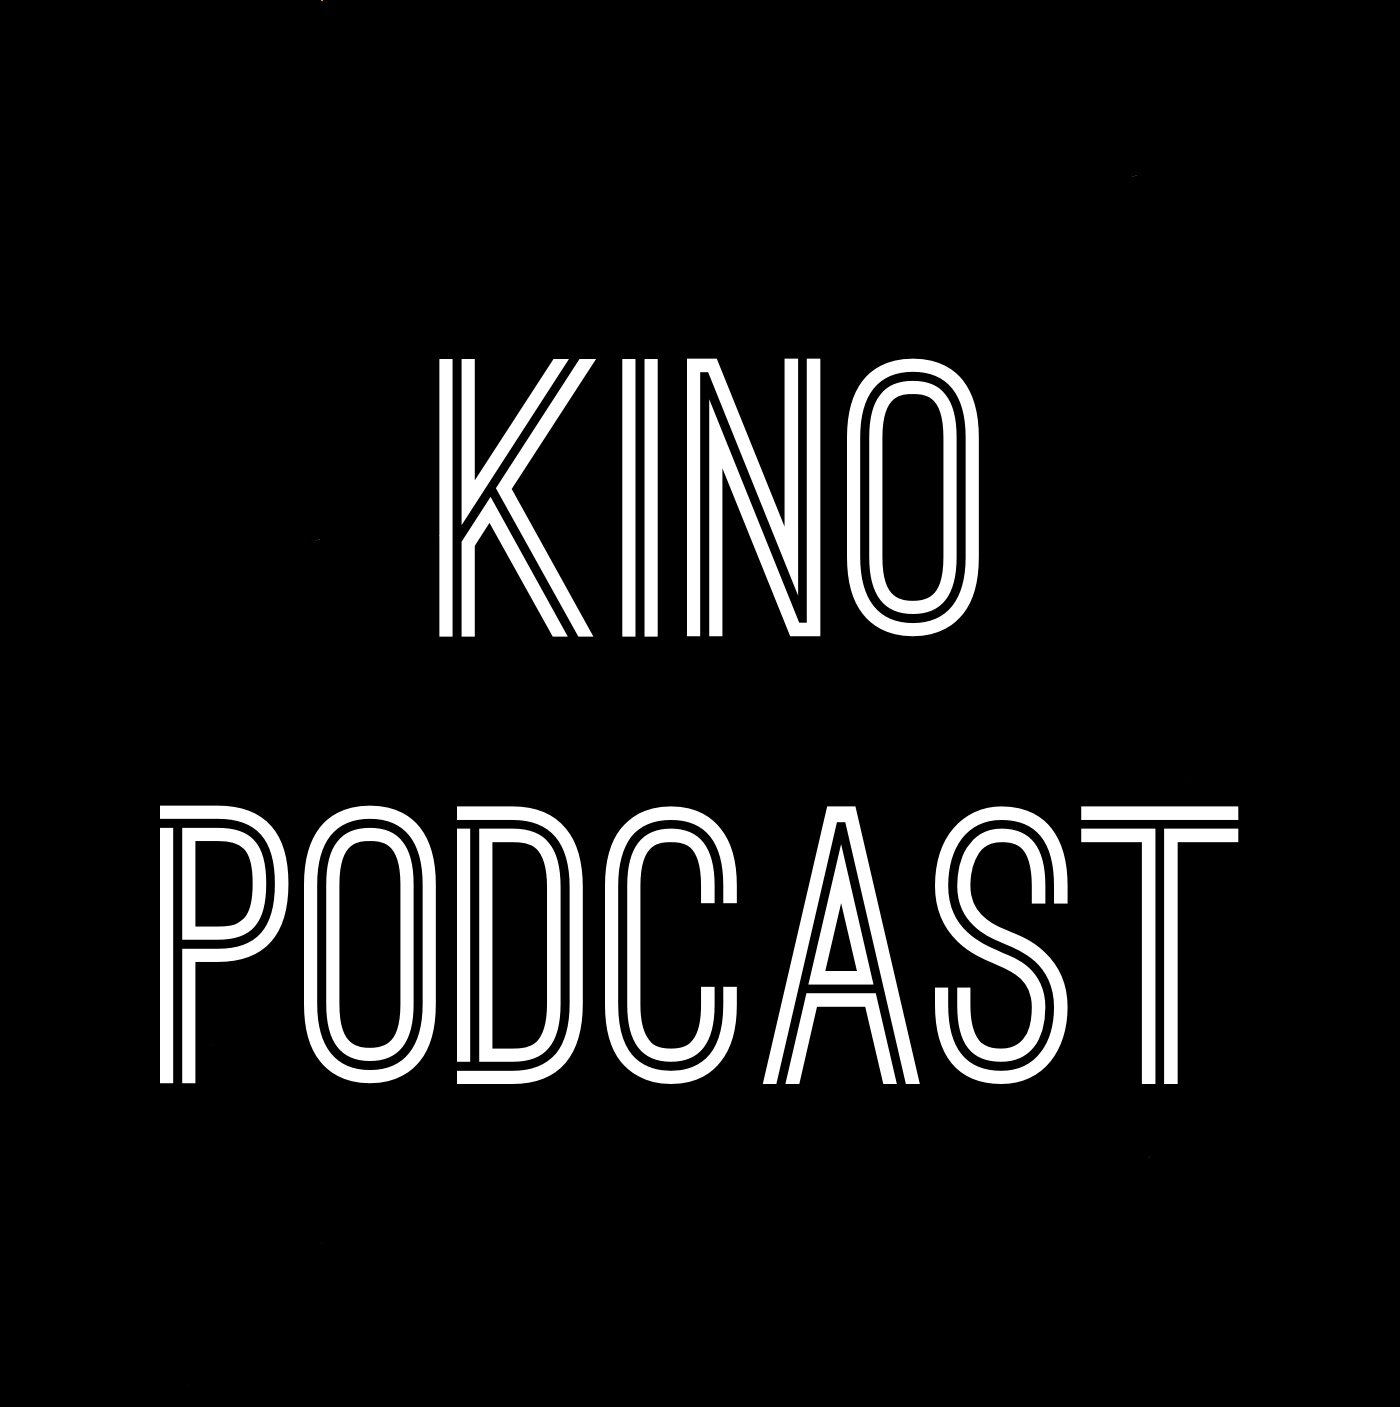 Kino Podcast logo